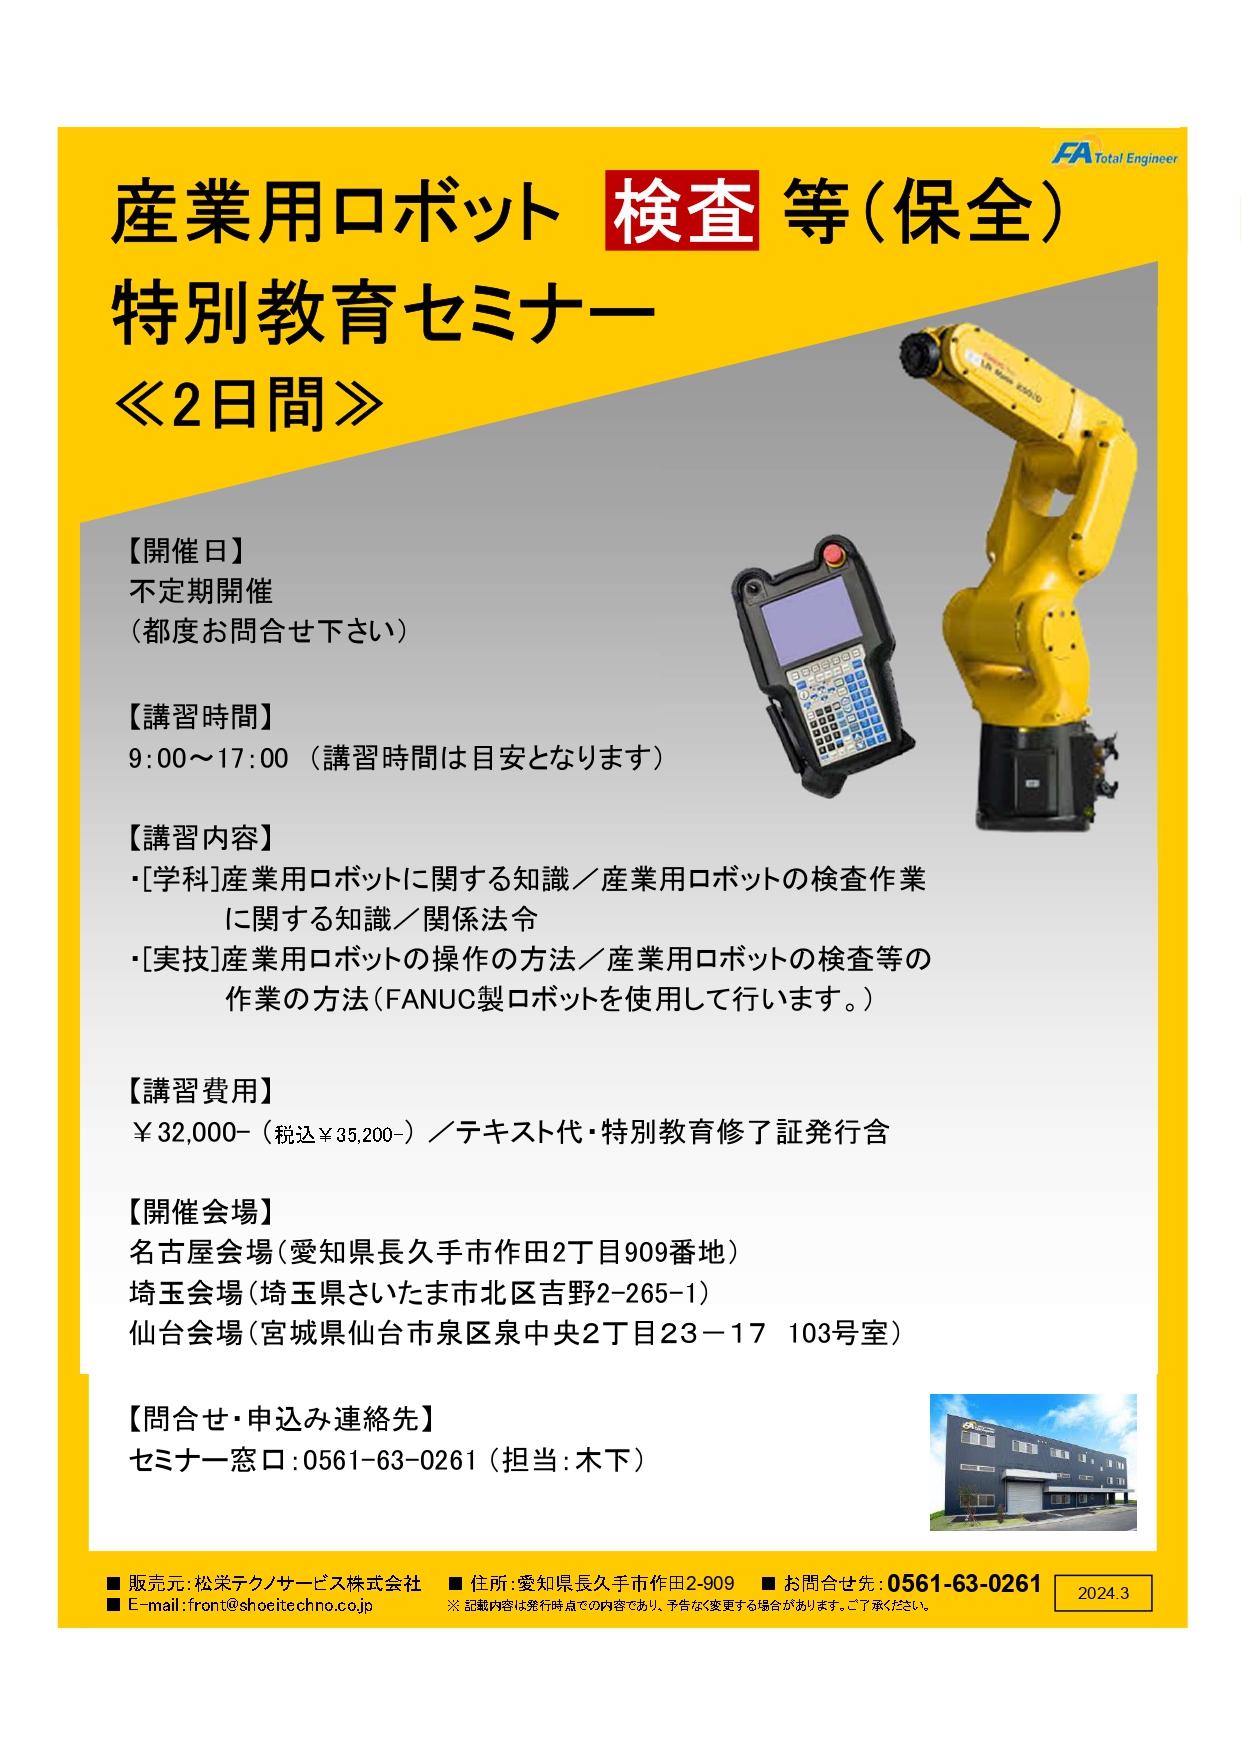 【保全様向け】産業用ロボット特別教育検査等（保全）セミナー開催のお知らせ